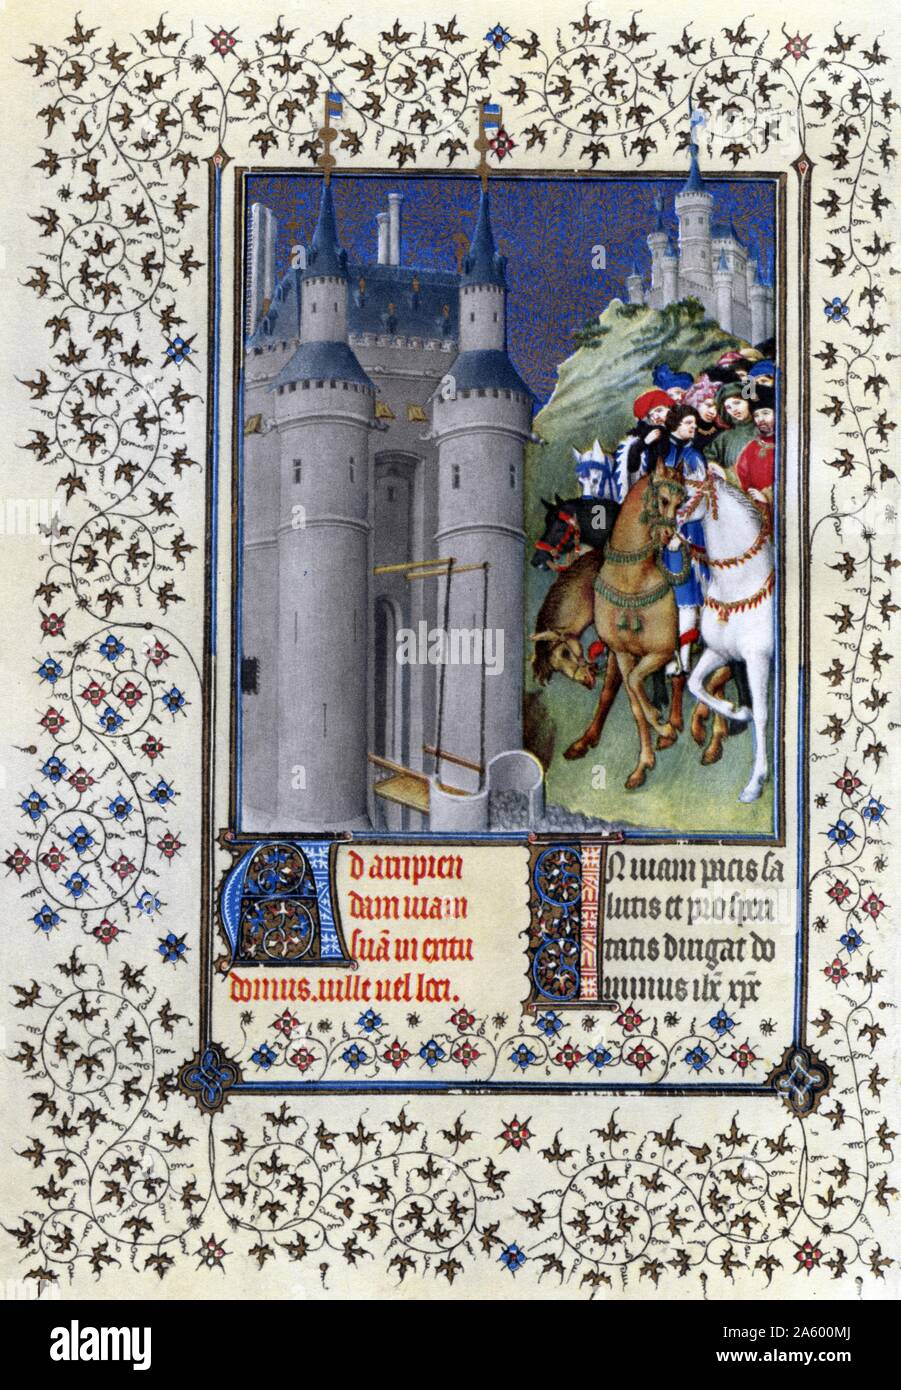 Beleuchtung mit Duc de Berry auf eine Reise von den Belles Heures von Jean de France, Duc de Berry (schöne Stunden) eine frühe 15. Jahrhundert beleuchtet Manuskript-Buch von Stunden. Vom 15. Jahrhundert Stockfoto